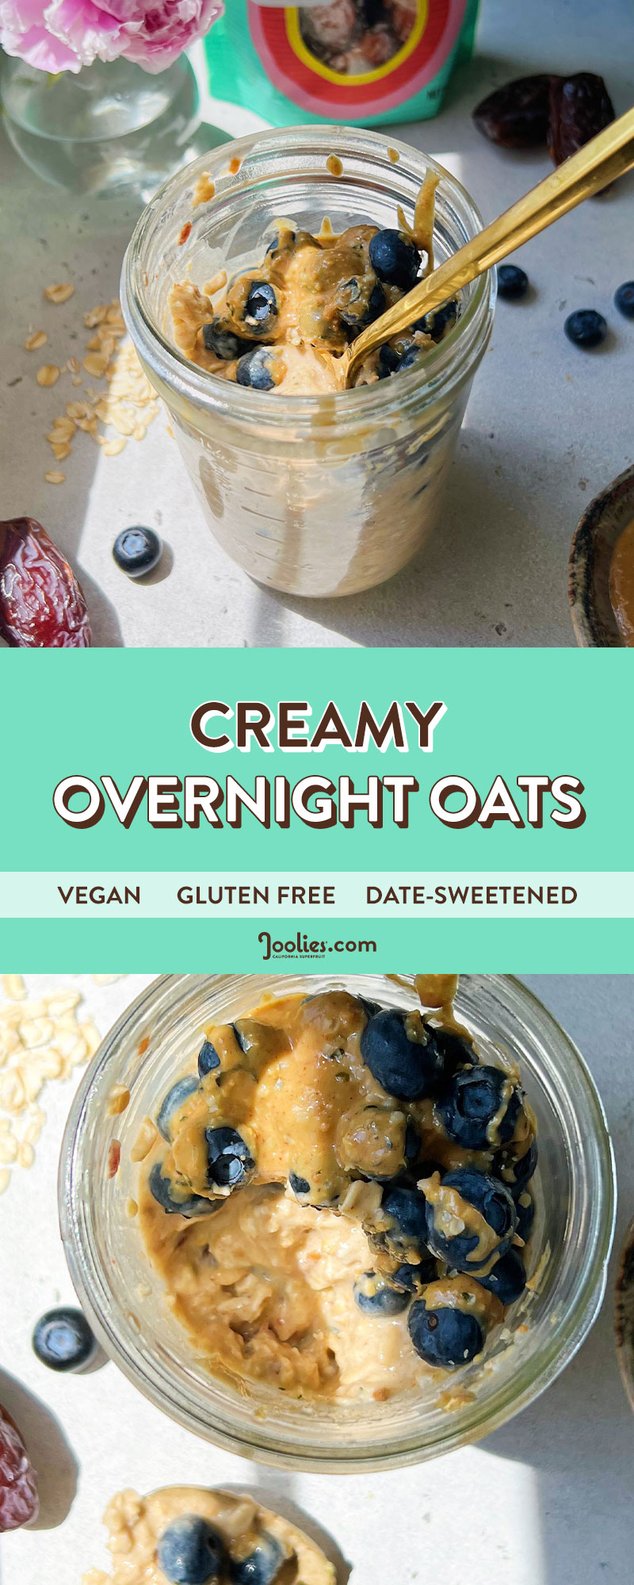 creamy-overnight-oats-pin-v2